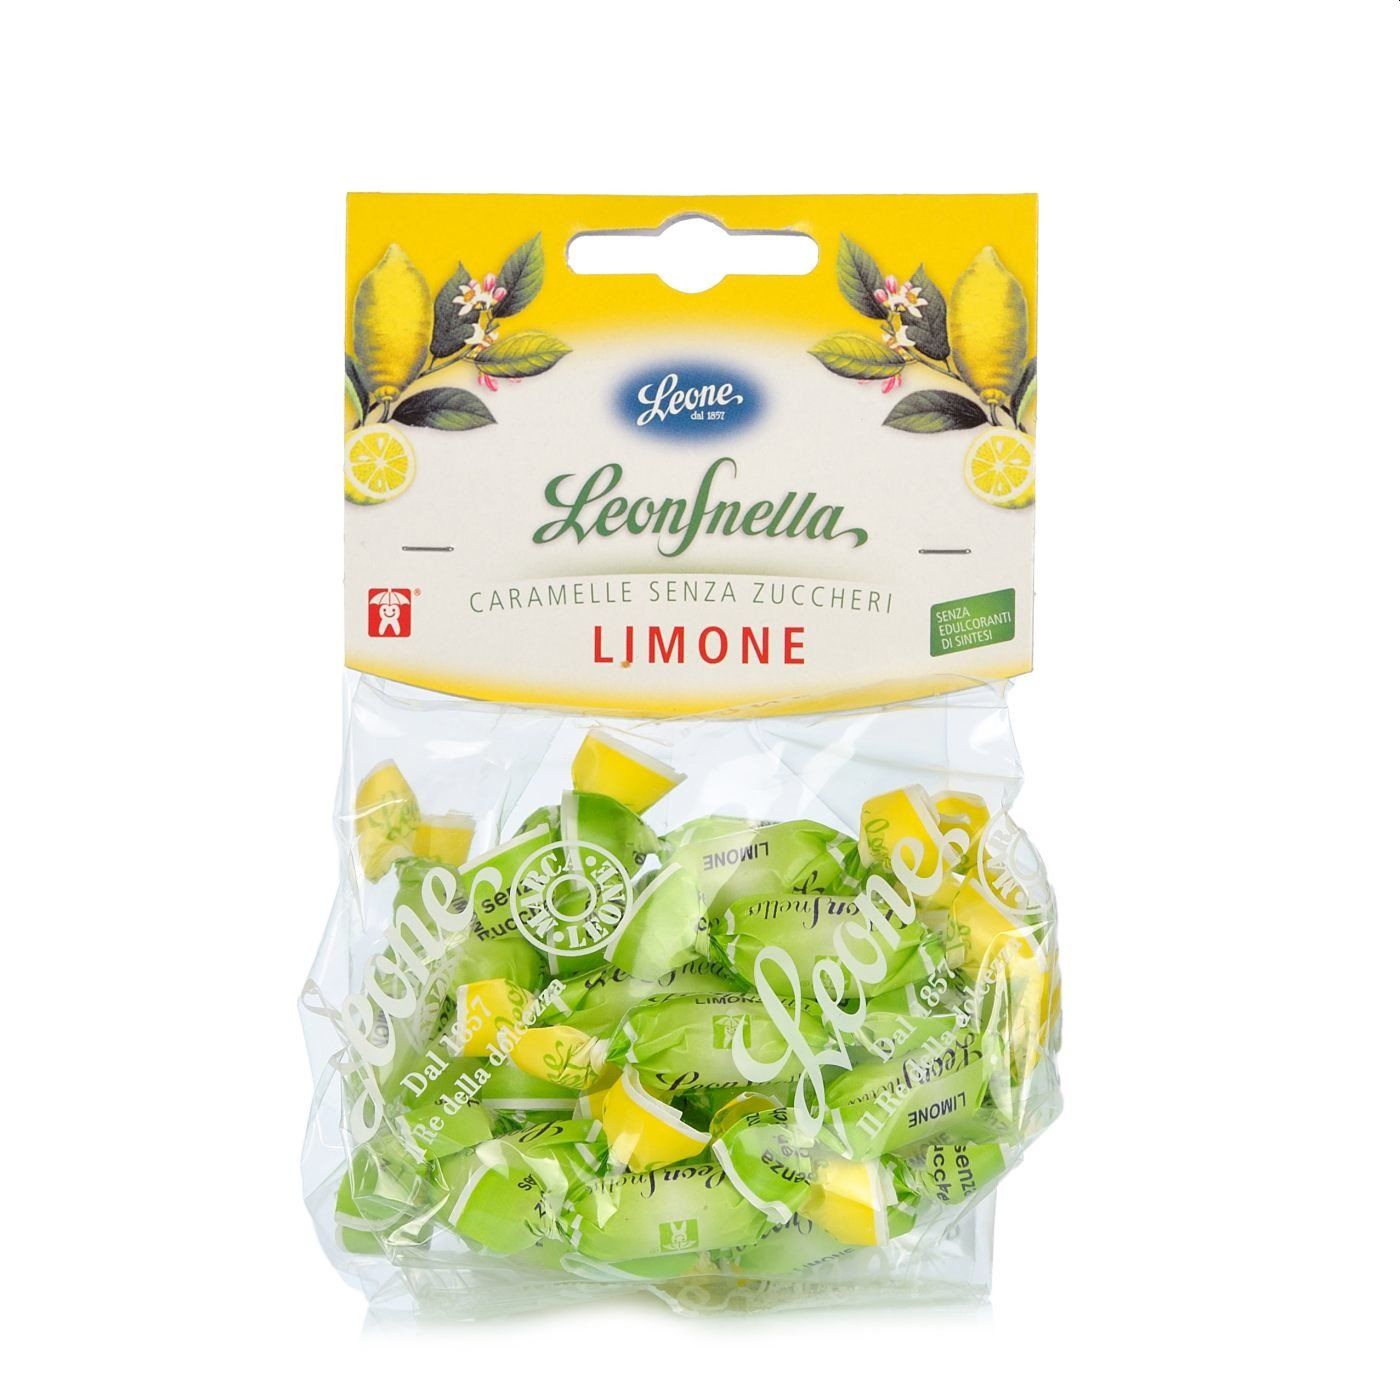 Caramelle Leonsnella al limone senza zucchero